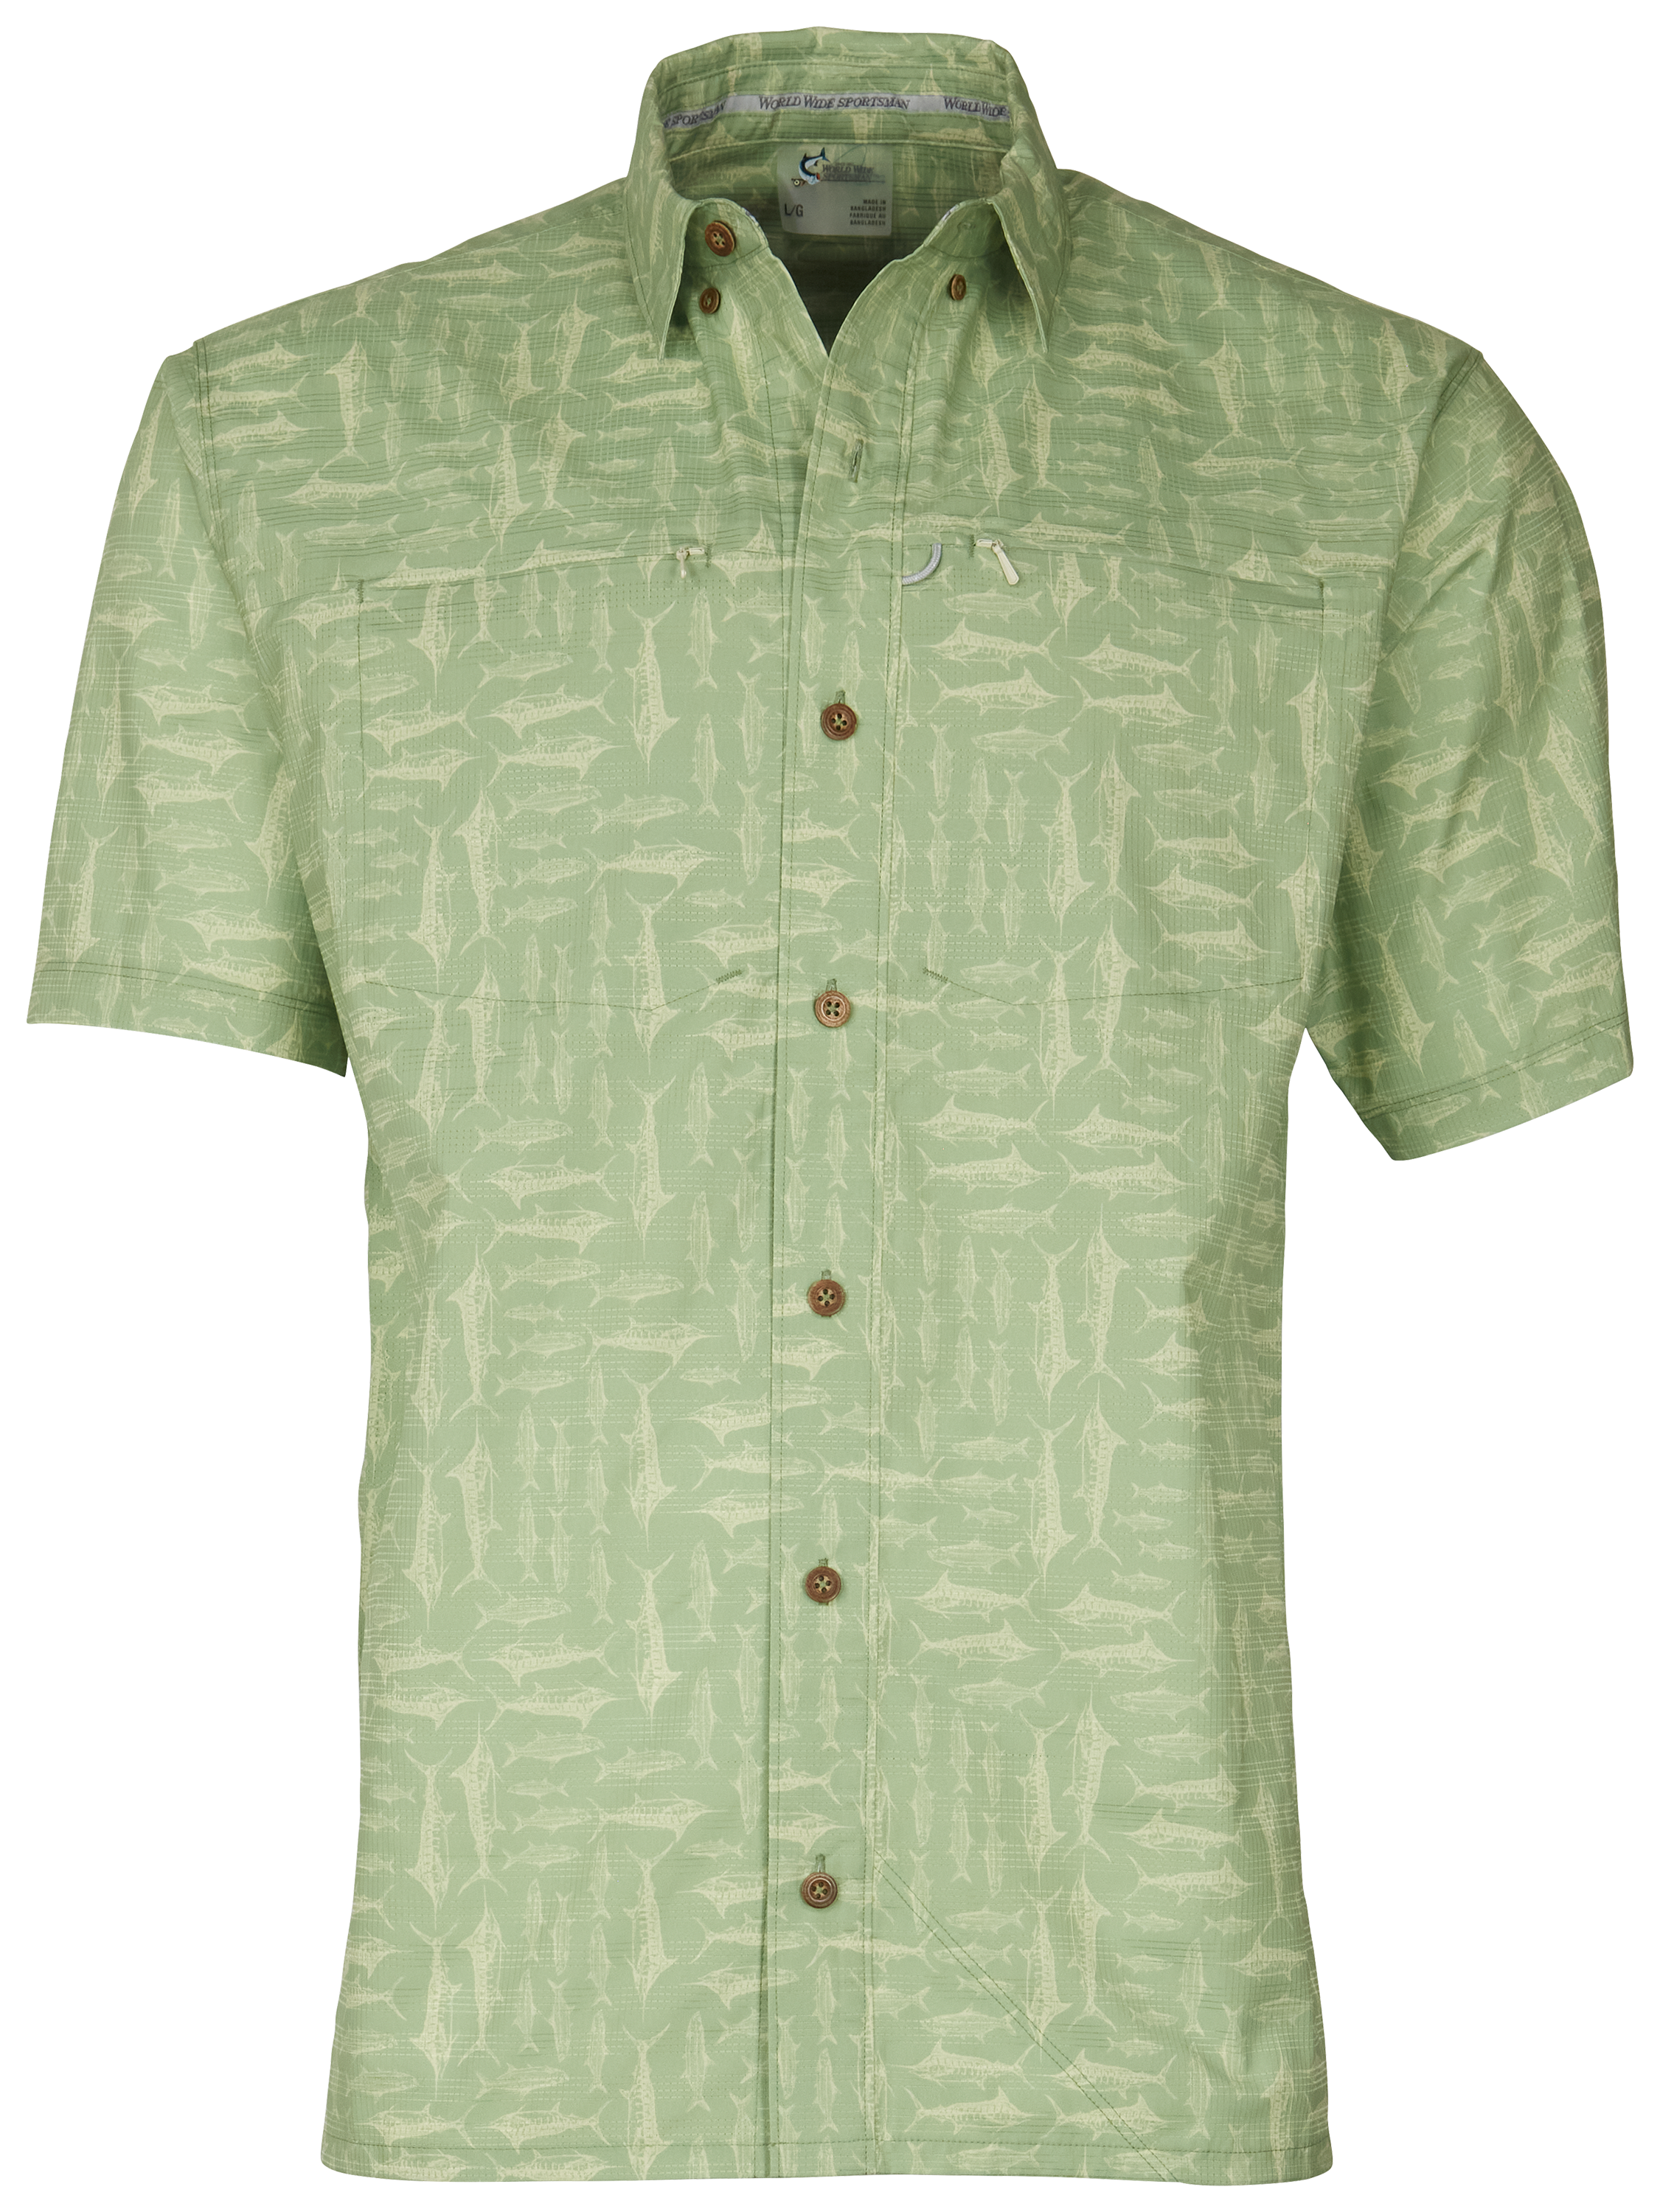 World Wide Sportsman Seacrest Print Short-Sleeve Button-Down Shirt for Men - Quiet Green Salt Rub - XL